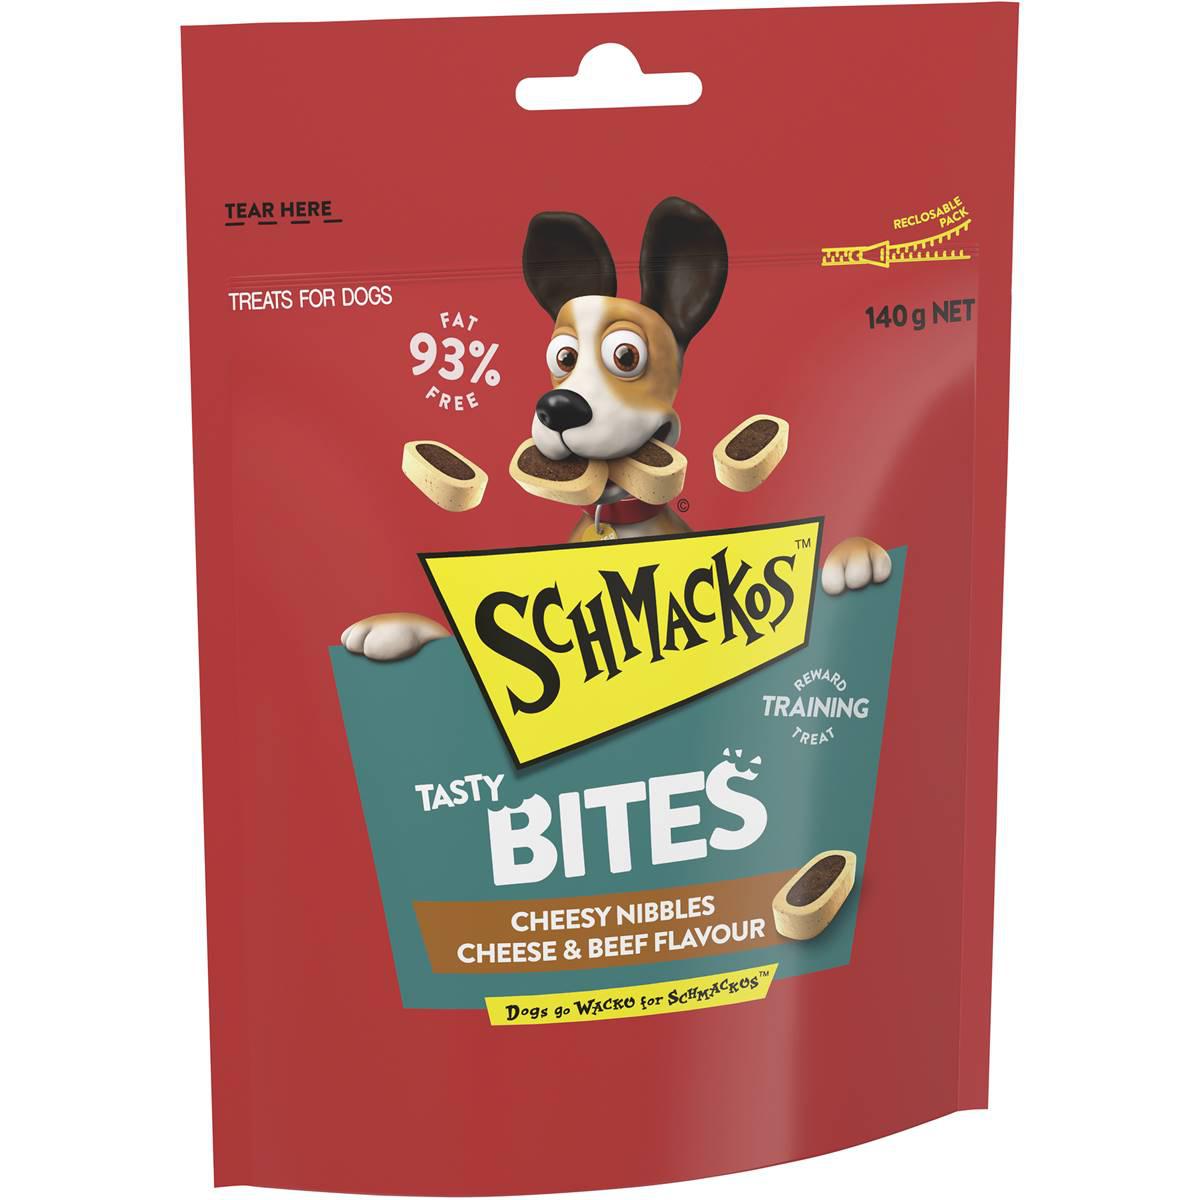 Schmackos Tasty Bites Cheesy Nibbles Cheese & Beef Dog Treats 140g